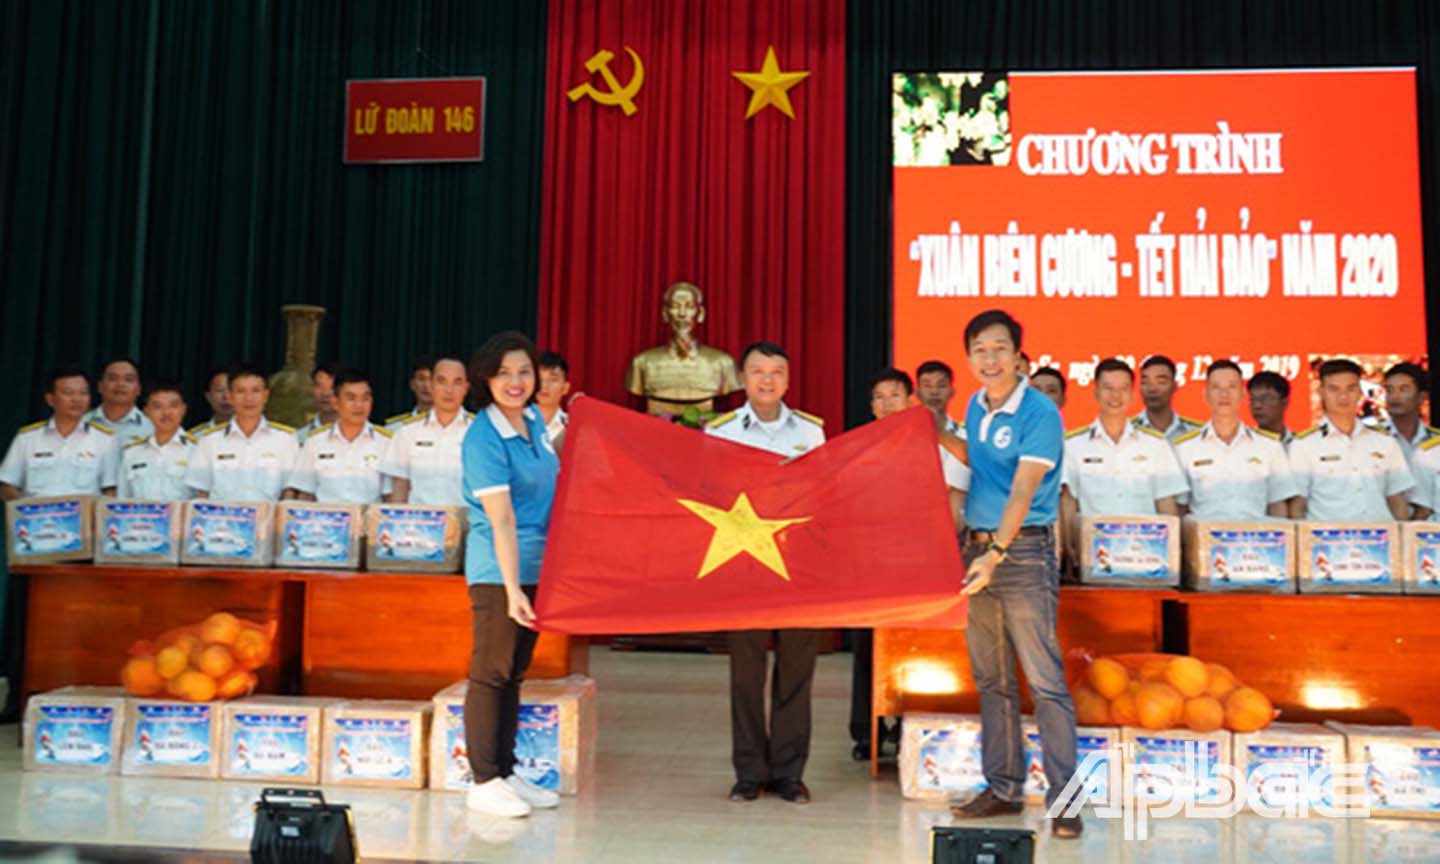 CLB Tuổi trẻ vì biển đảo quê hương trao lá cờ Tổ quốc có chữ ký của các cầu thủ U22 Việt Nam cho Lữ đoàn Trường Sa - Bộ Tư lệnh Vùng 4 Hải quân.